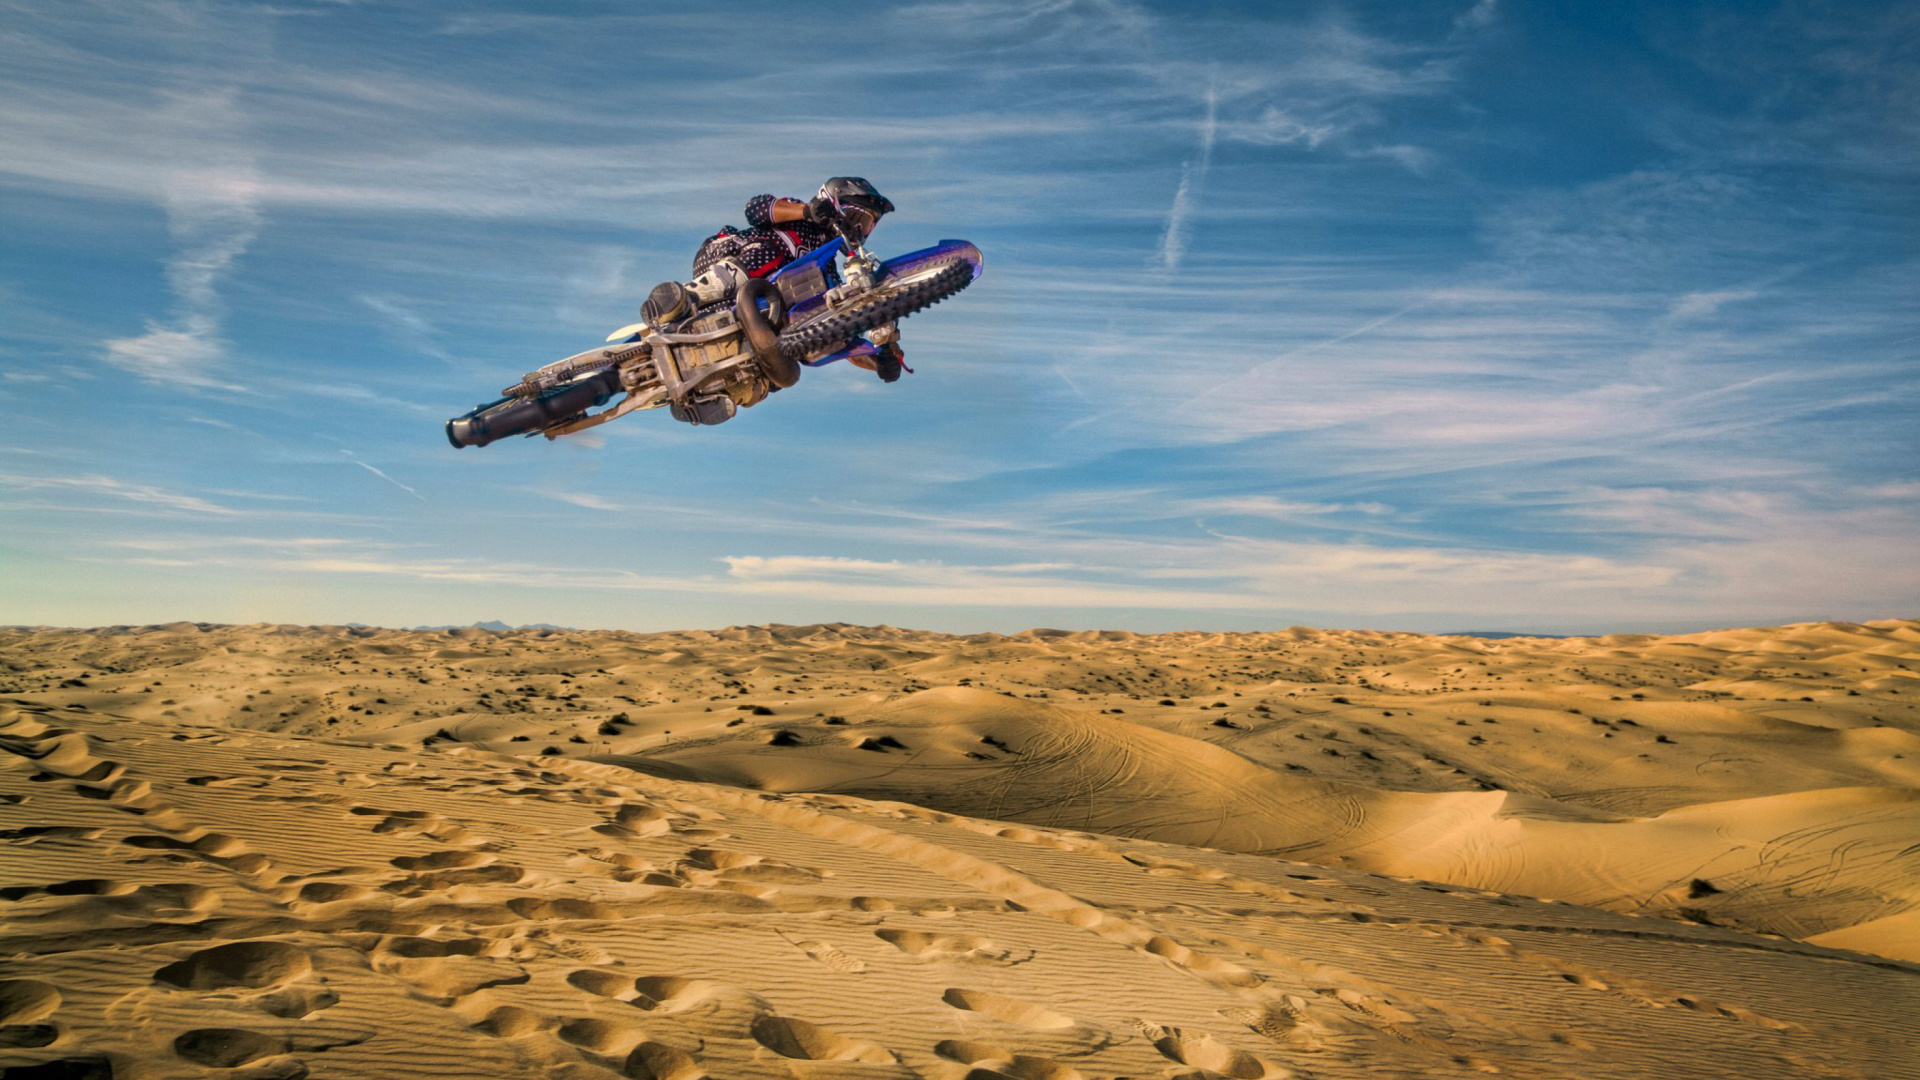 Sfondi Motocross in Desert 1920x1080